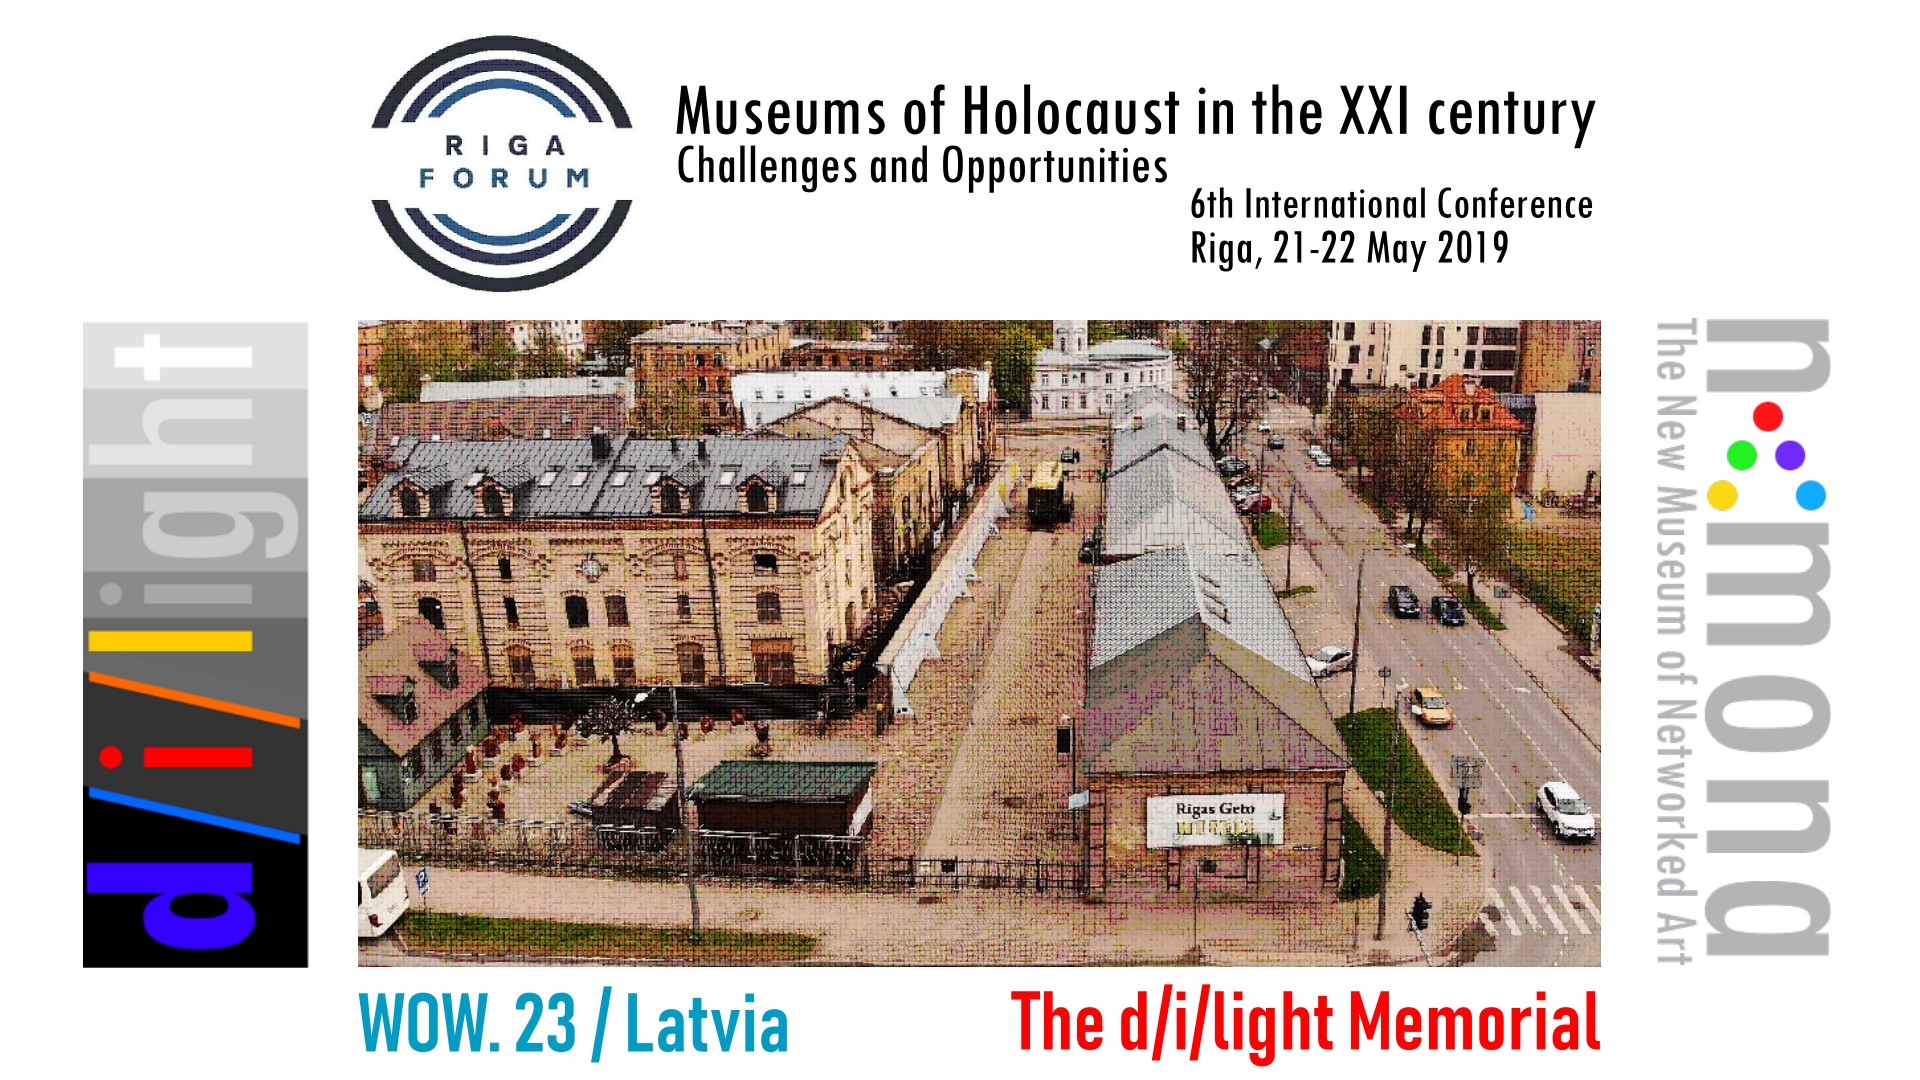 21-22 May 2019 – d/i/light Memorial in Riga